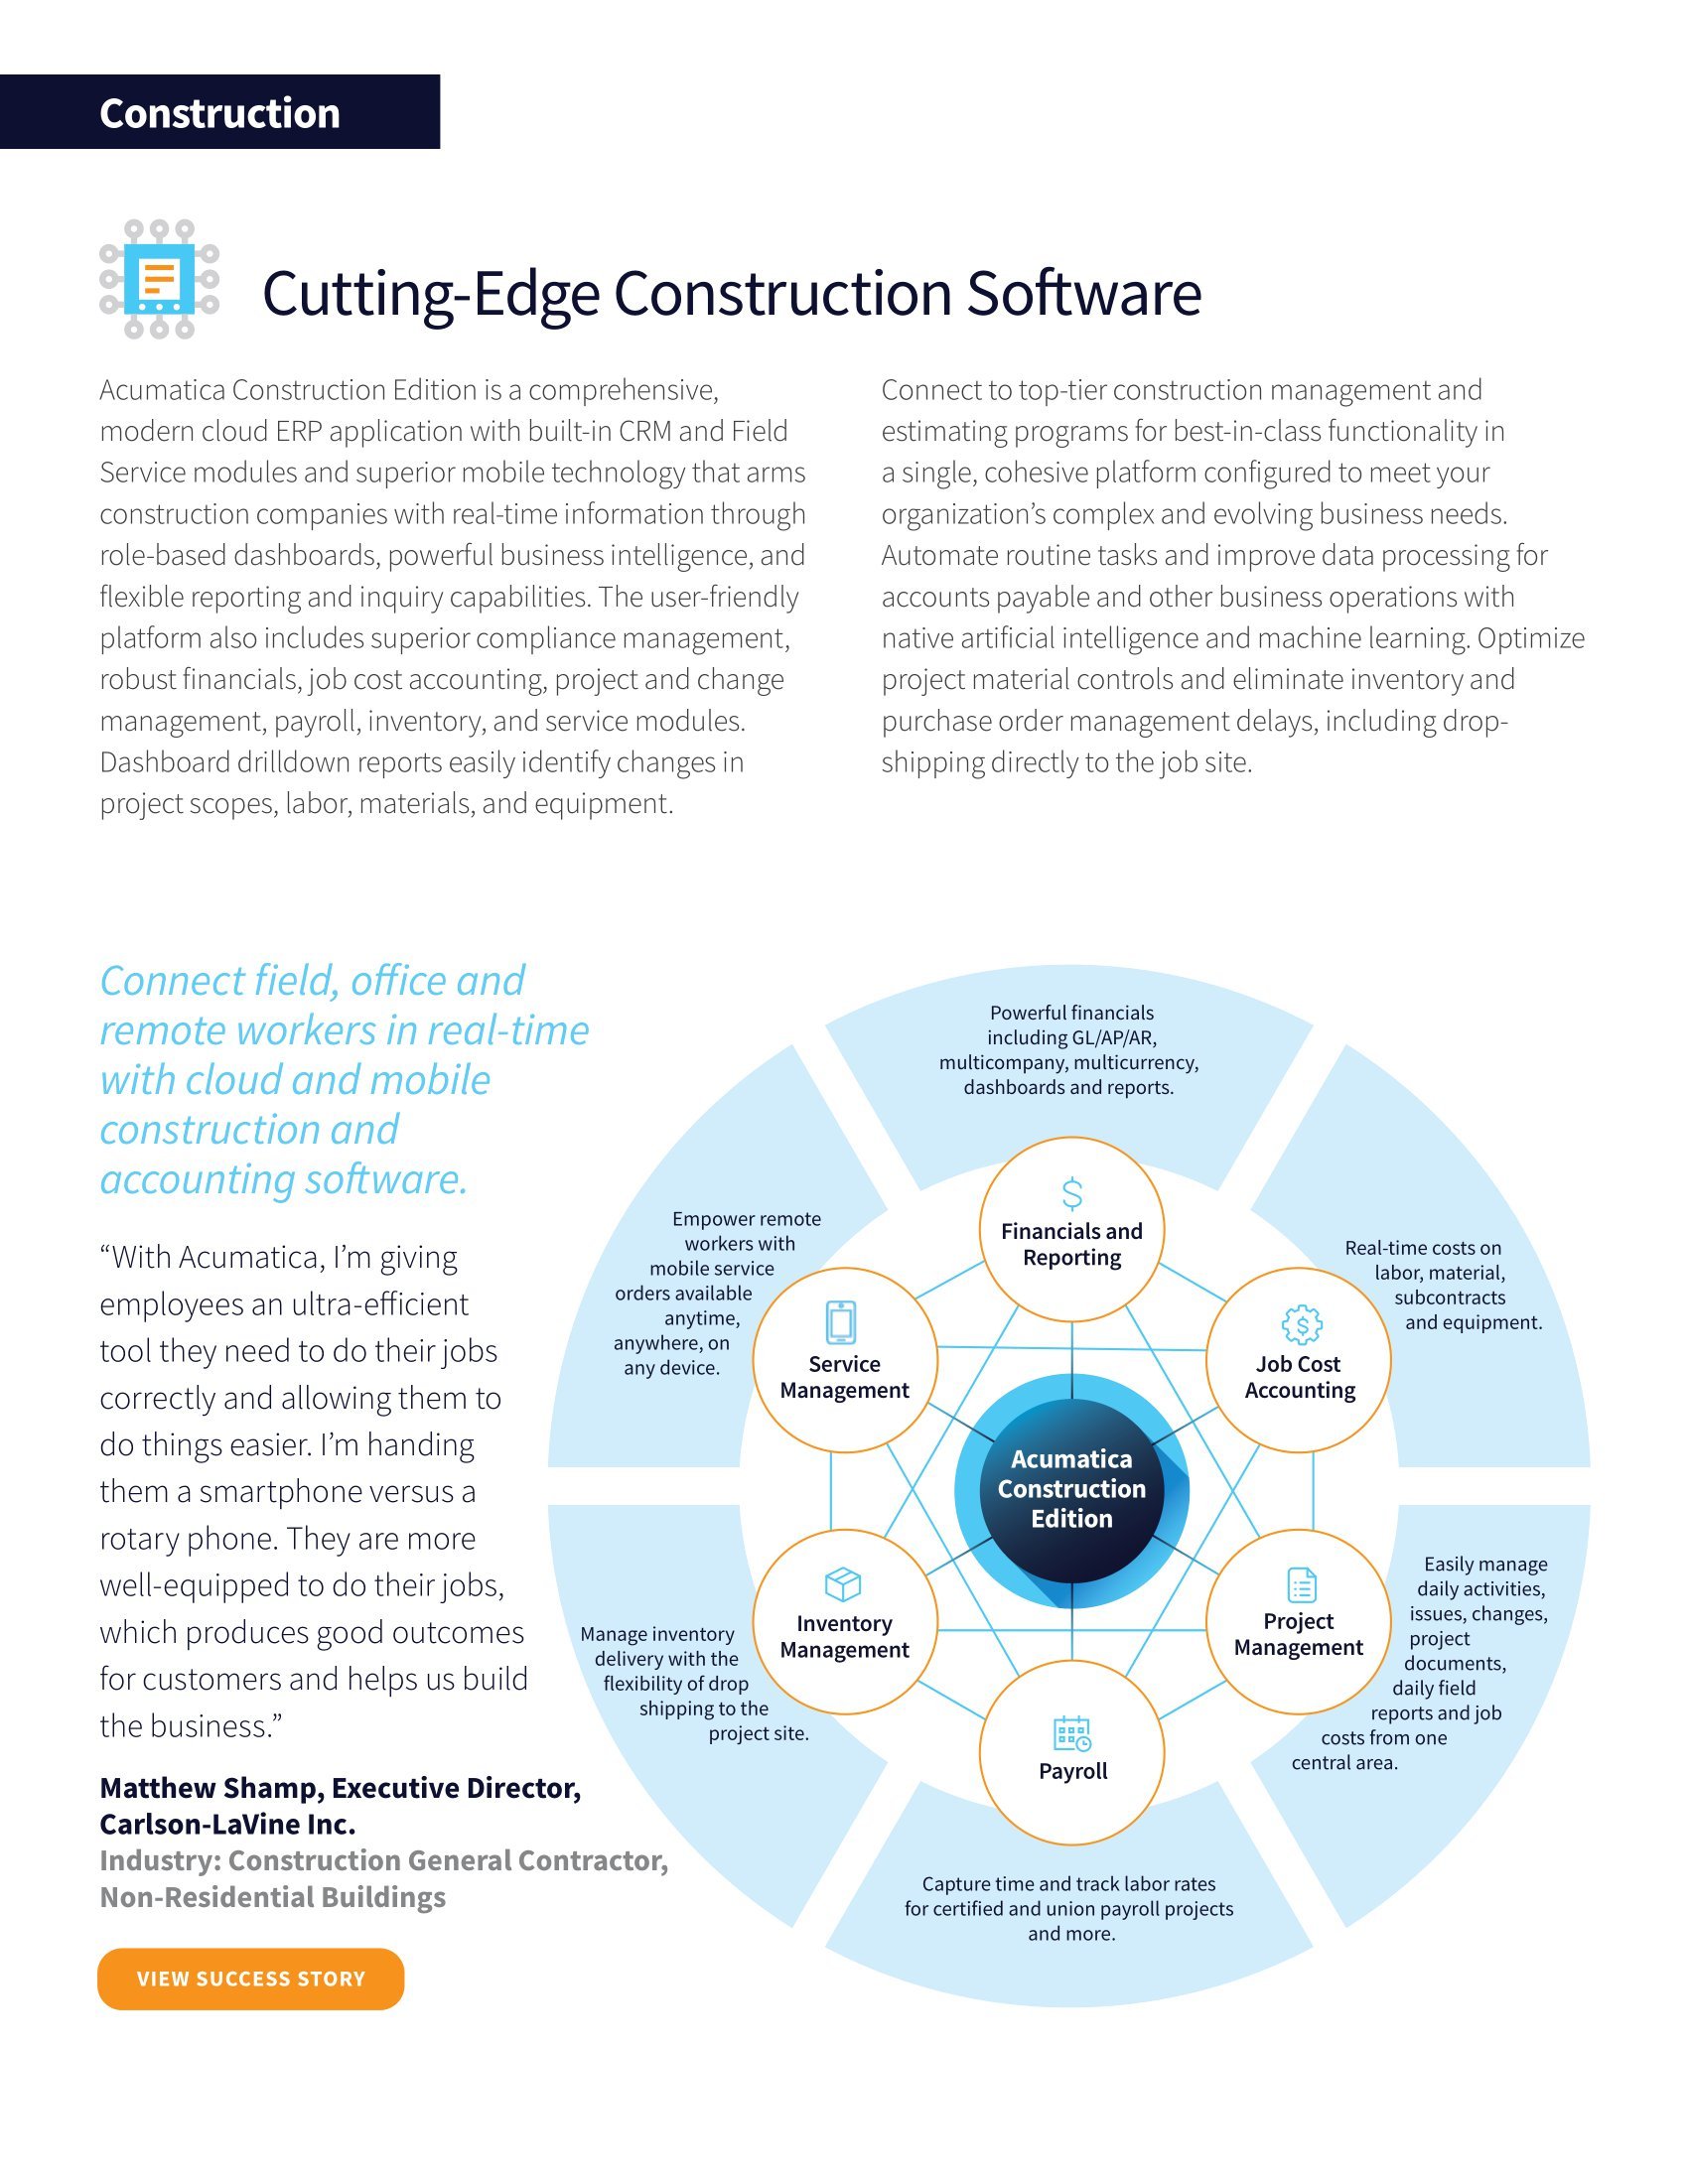 Acumatica Construction Edition : une solution ERP complète pour répondre à tous vos besoins, page 1